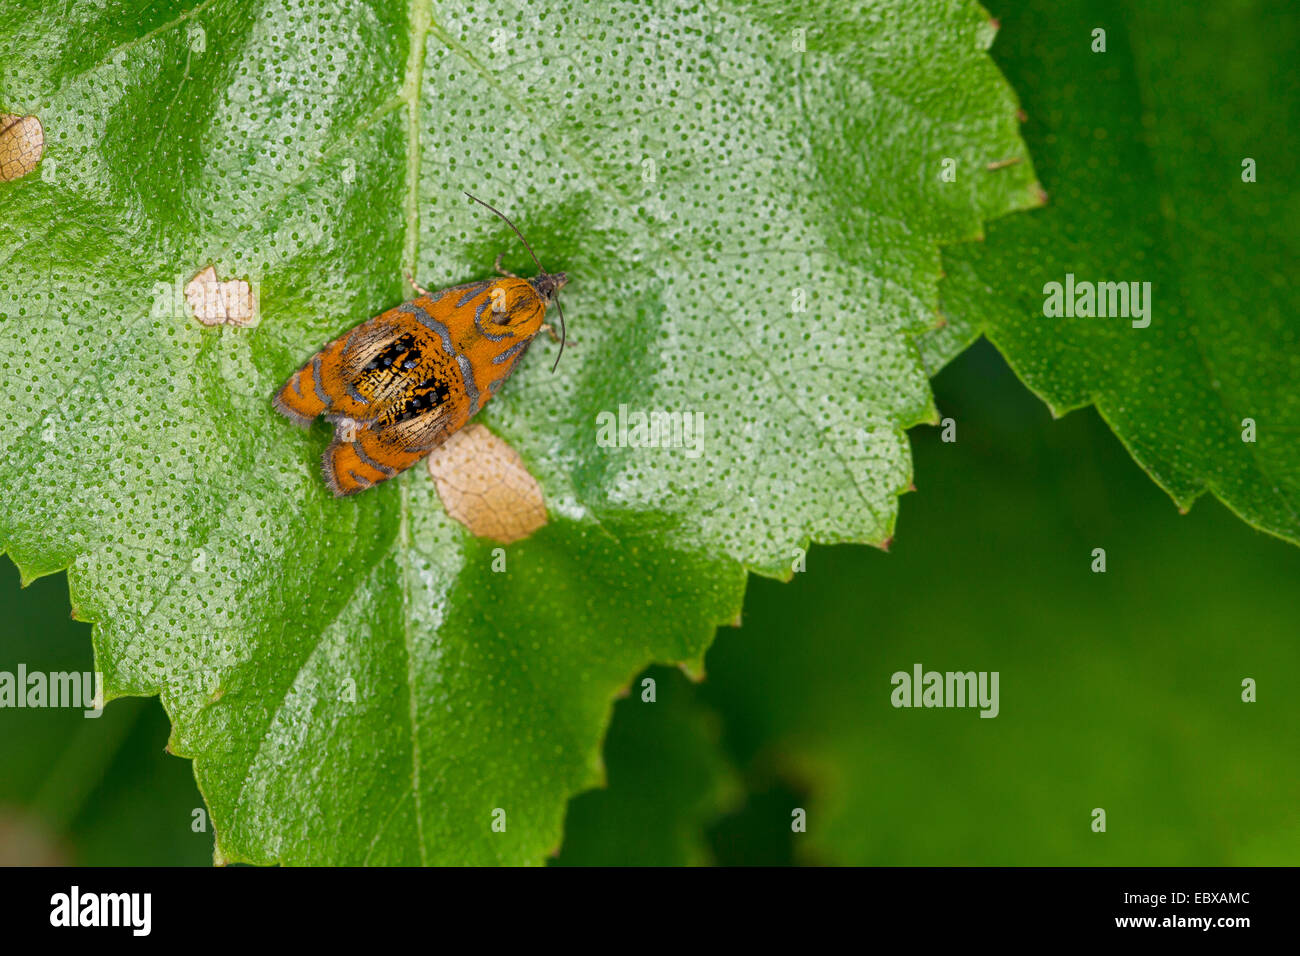 Arched Marble, tortrix moth (Olethreutes arcuella, Olethreutes arcuana), on a leaf, Germany Stock Photo